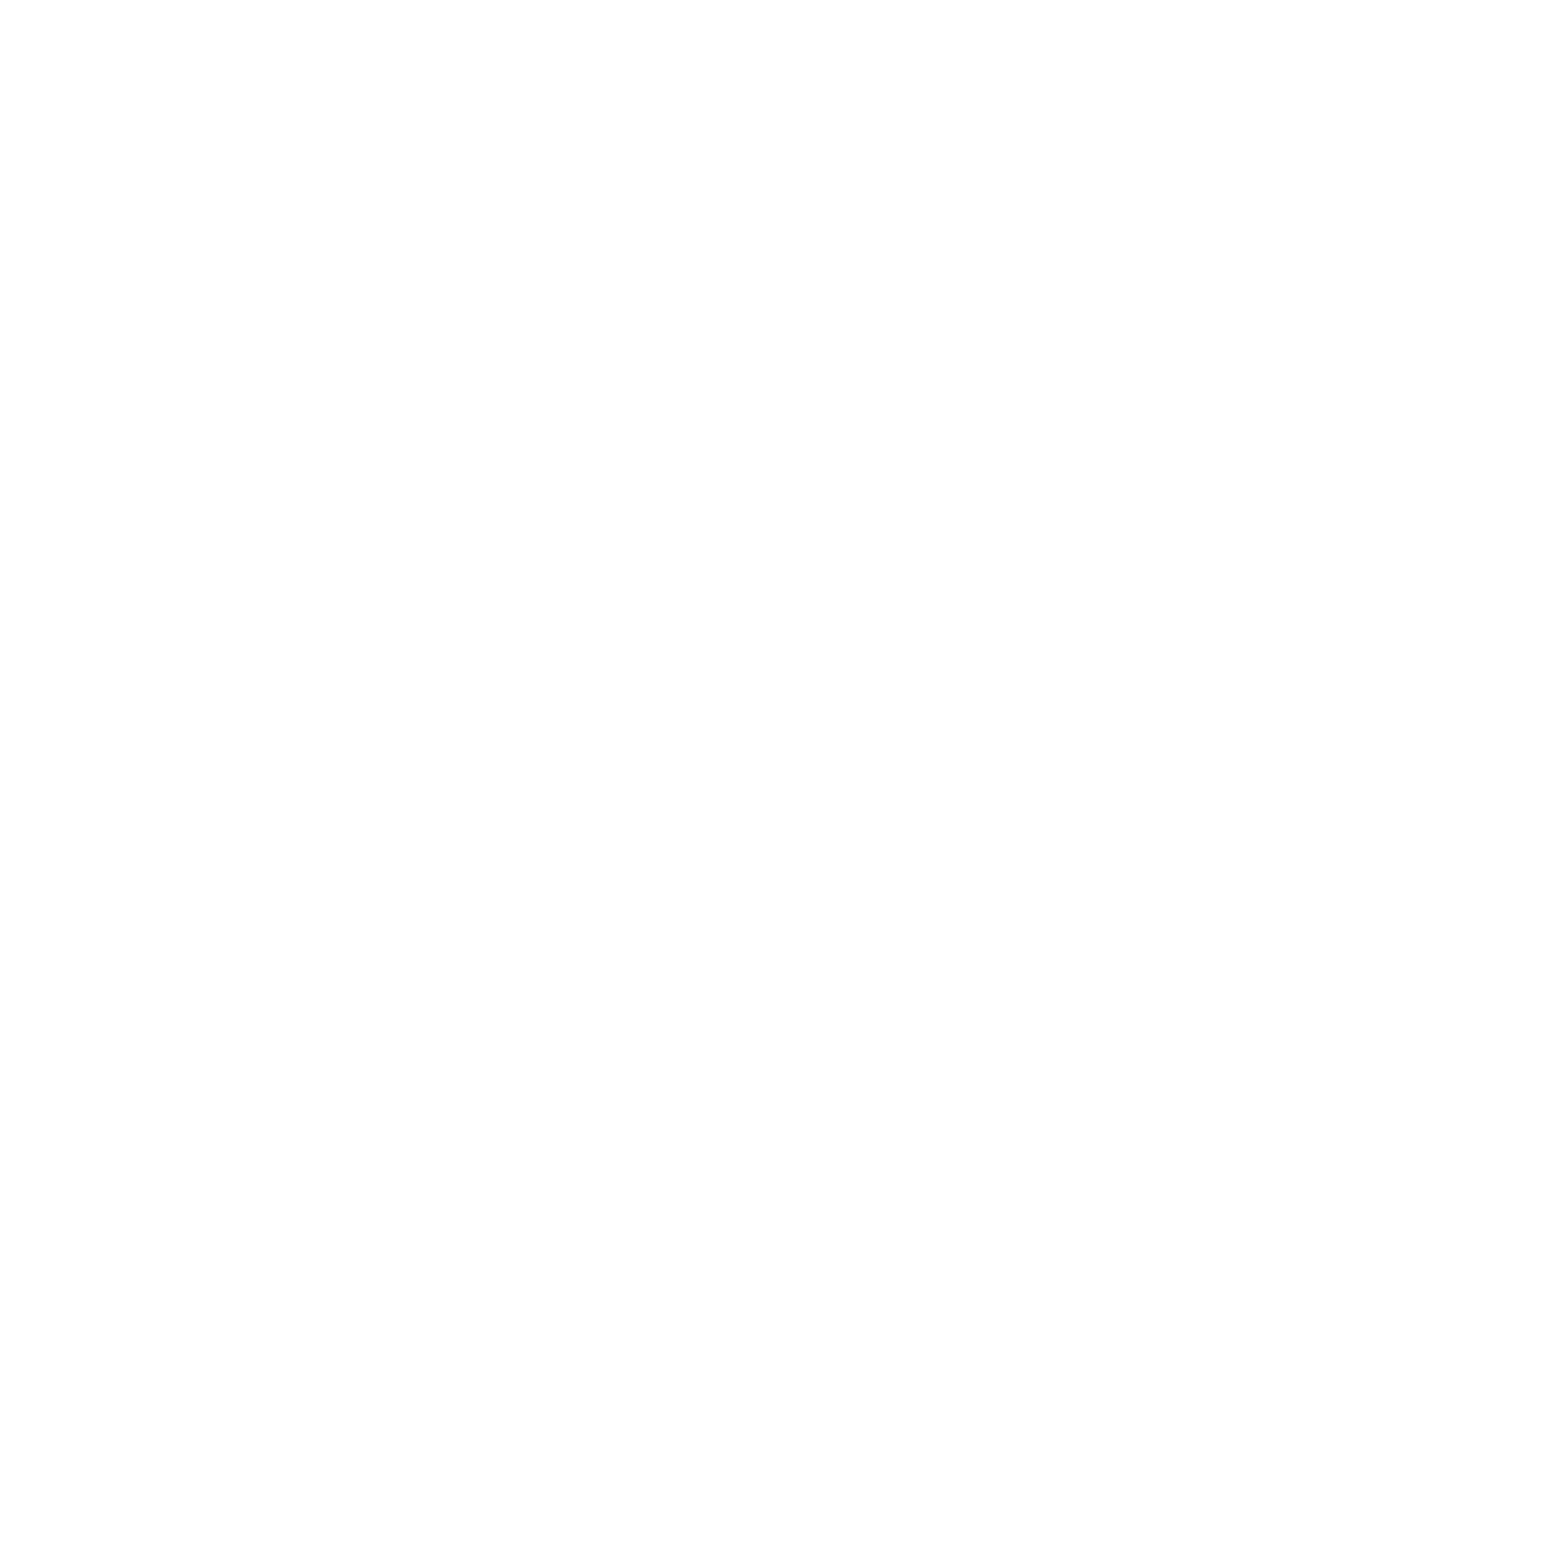 Enad Global 7 logo pour fonds sombres (PNG transparent)